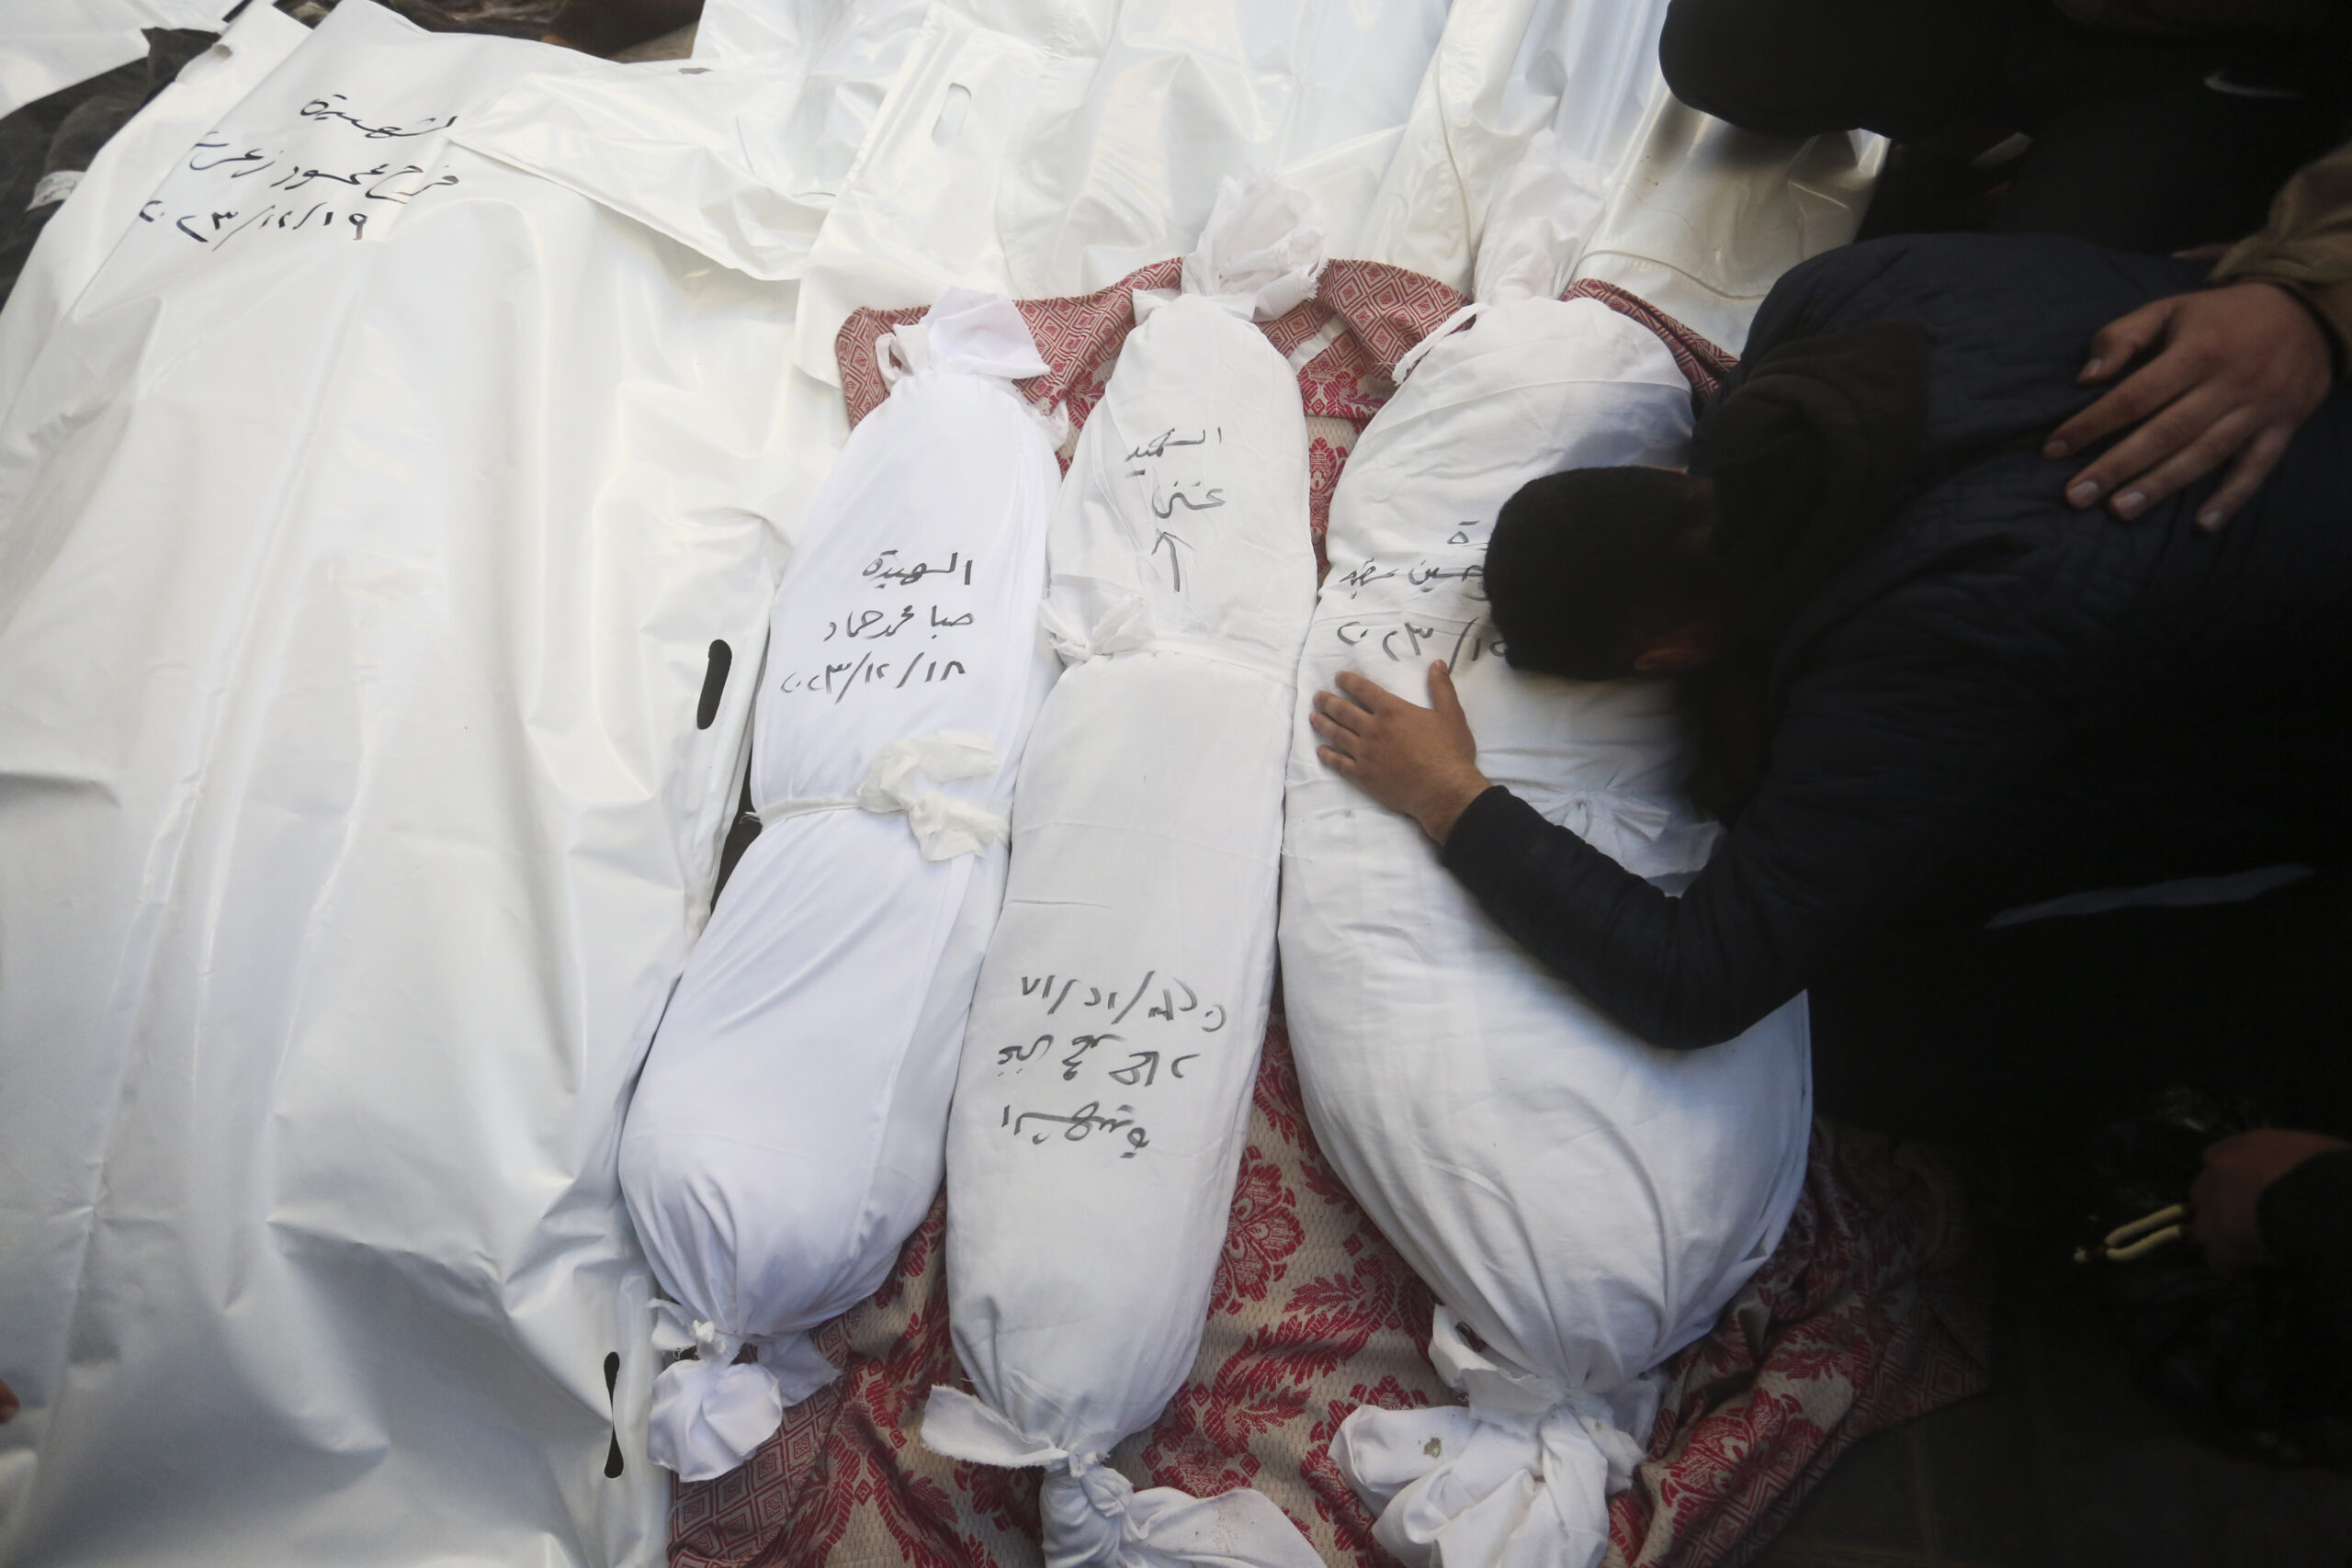 Gaza, i medici: "Scavalchiamo cadaveri di bambini per cercare di salvare altri bambini che moriranno"